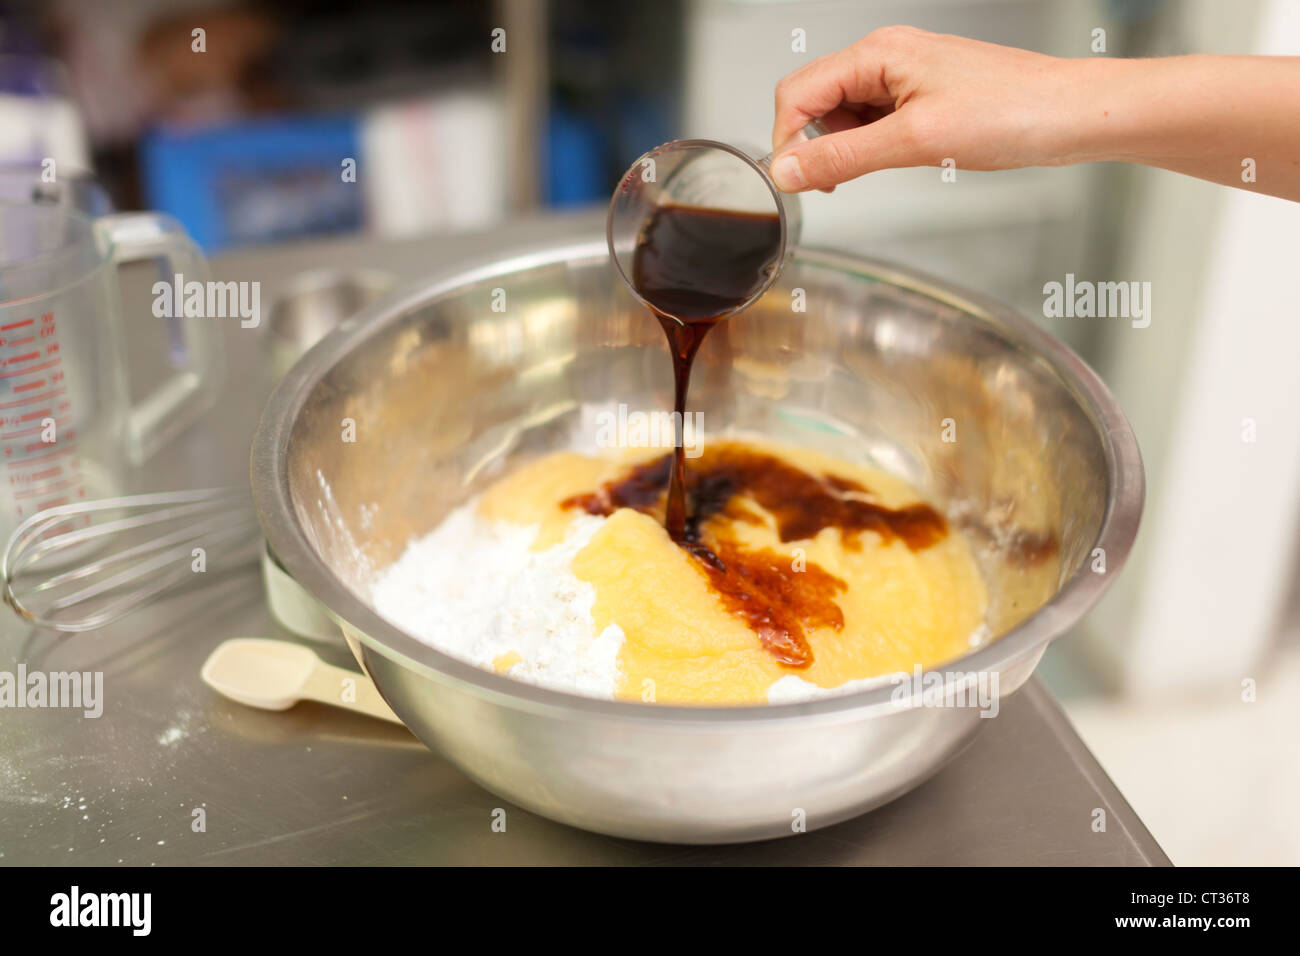 Une femme verse de l'extrait de vanille comme elle mélange des ingrédients dans un grand bol à mélanger pendant la cuisson des beignets à Tandmen Doughnu Banque D'Images